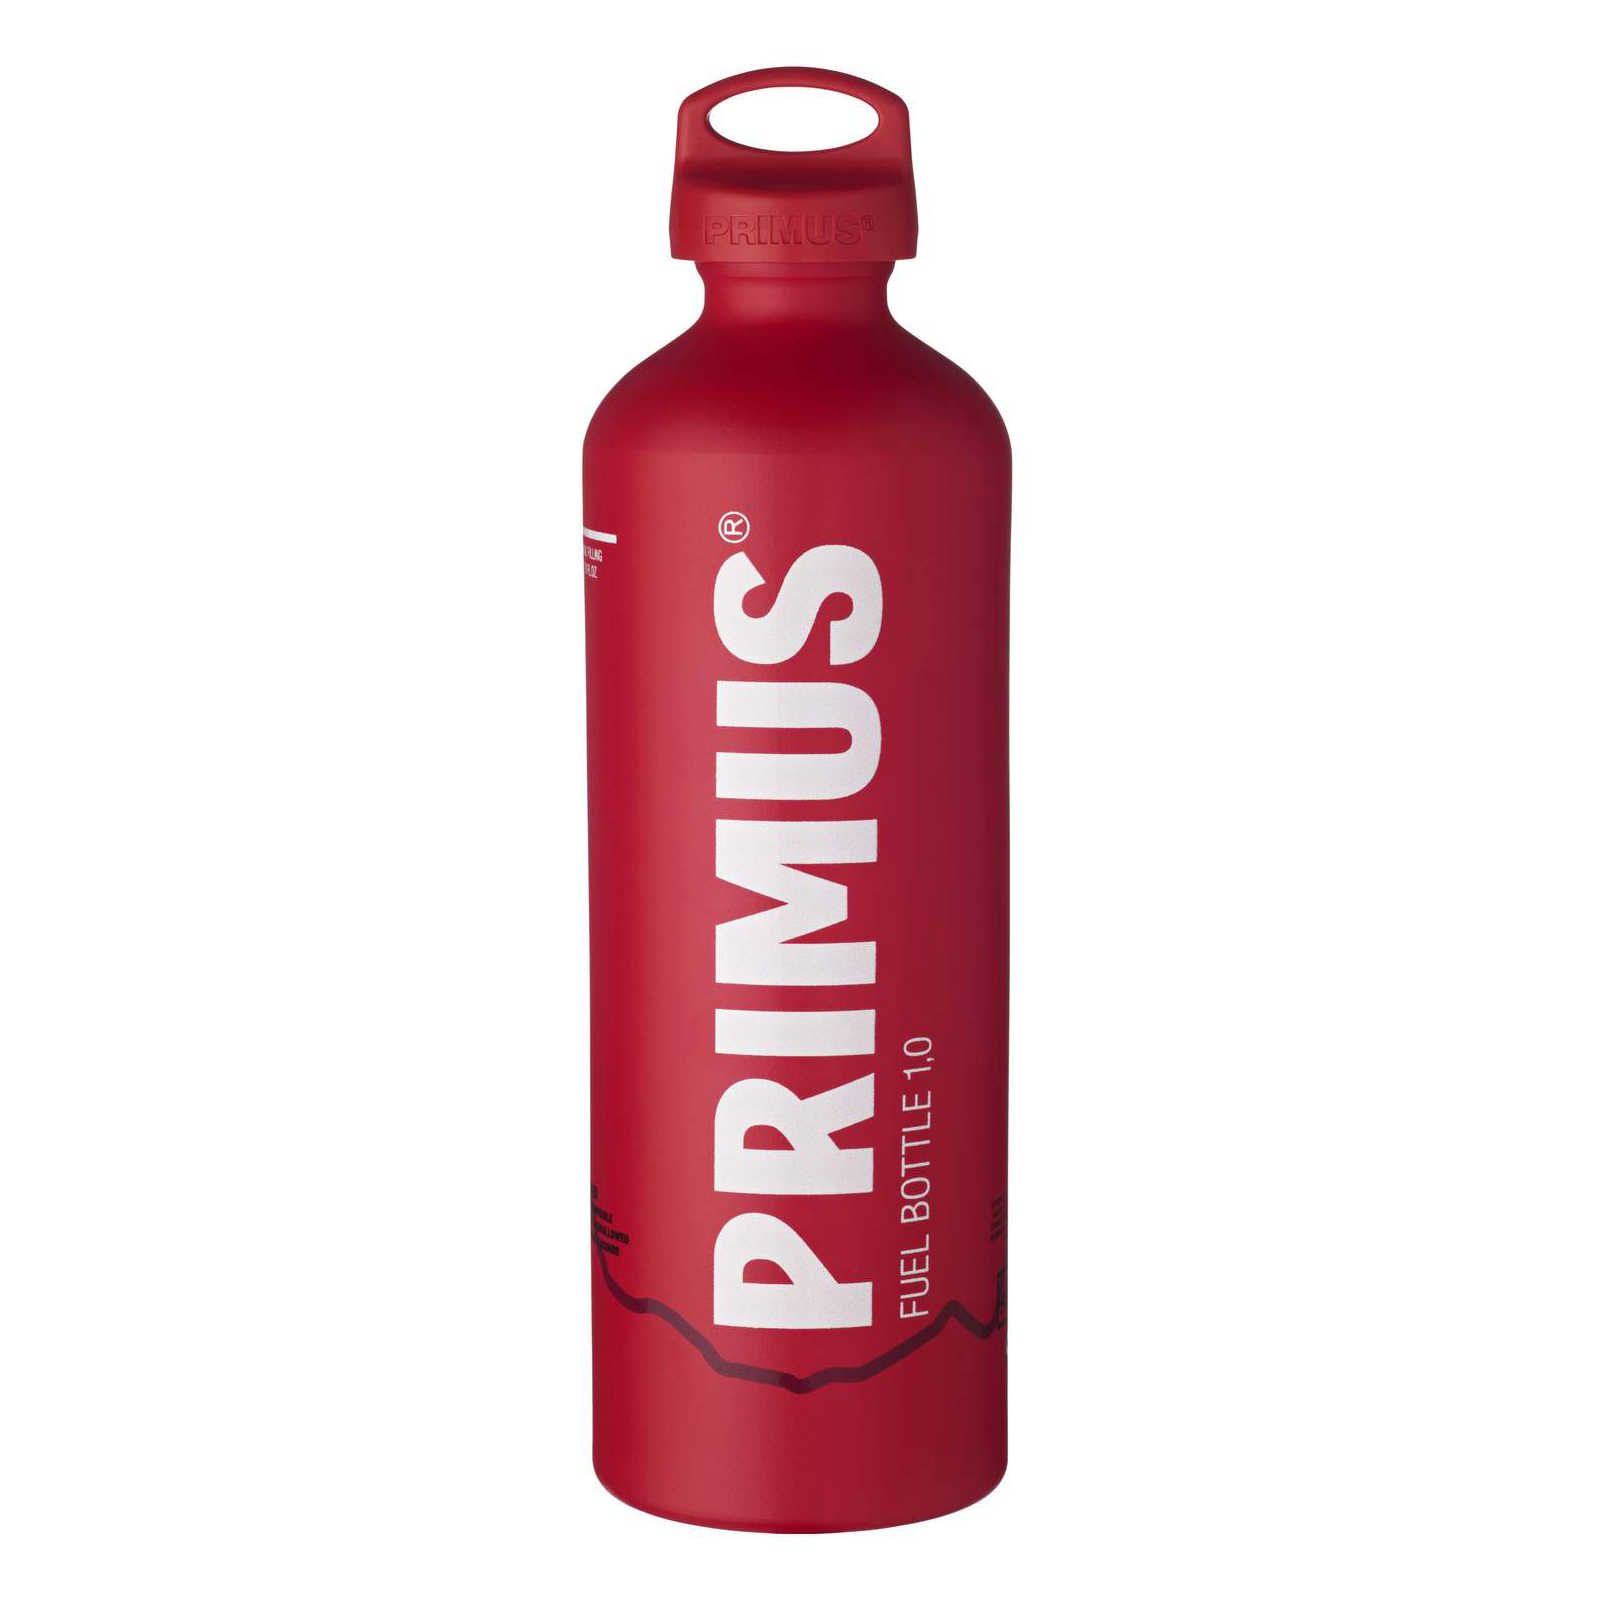 Bouteille à combustible Primus Fuel - 1 litre